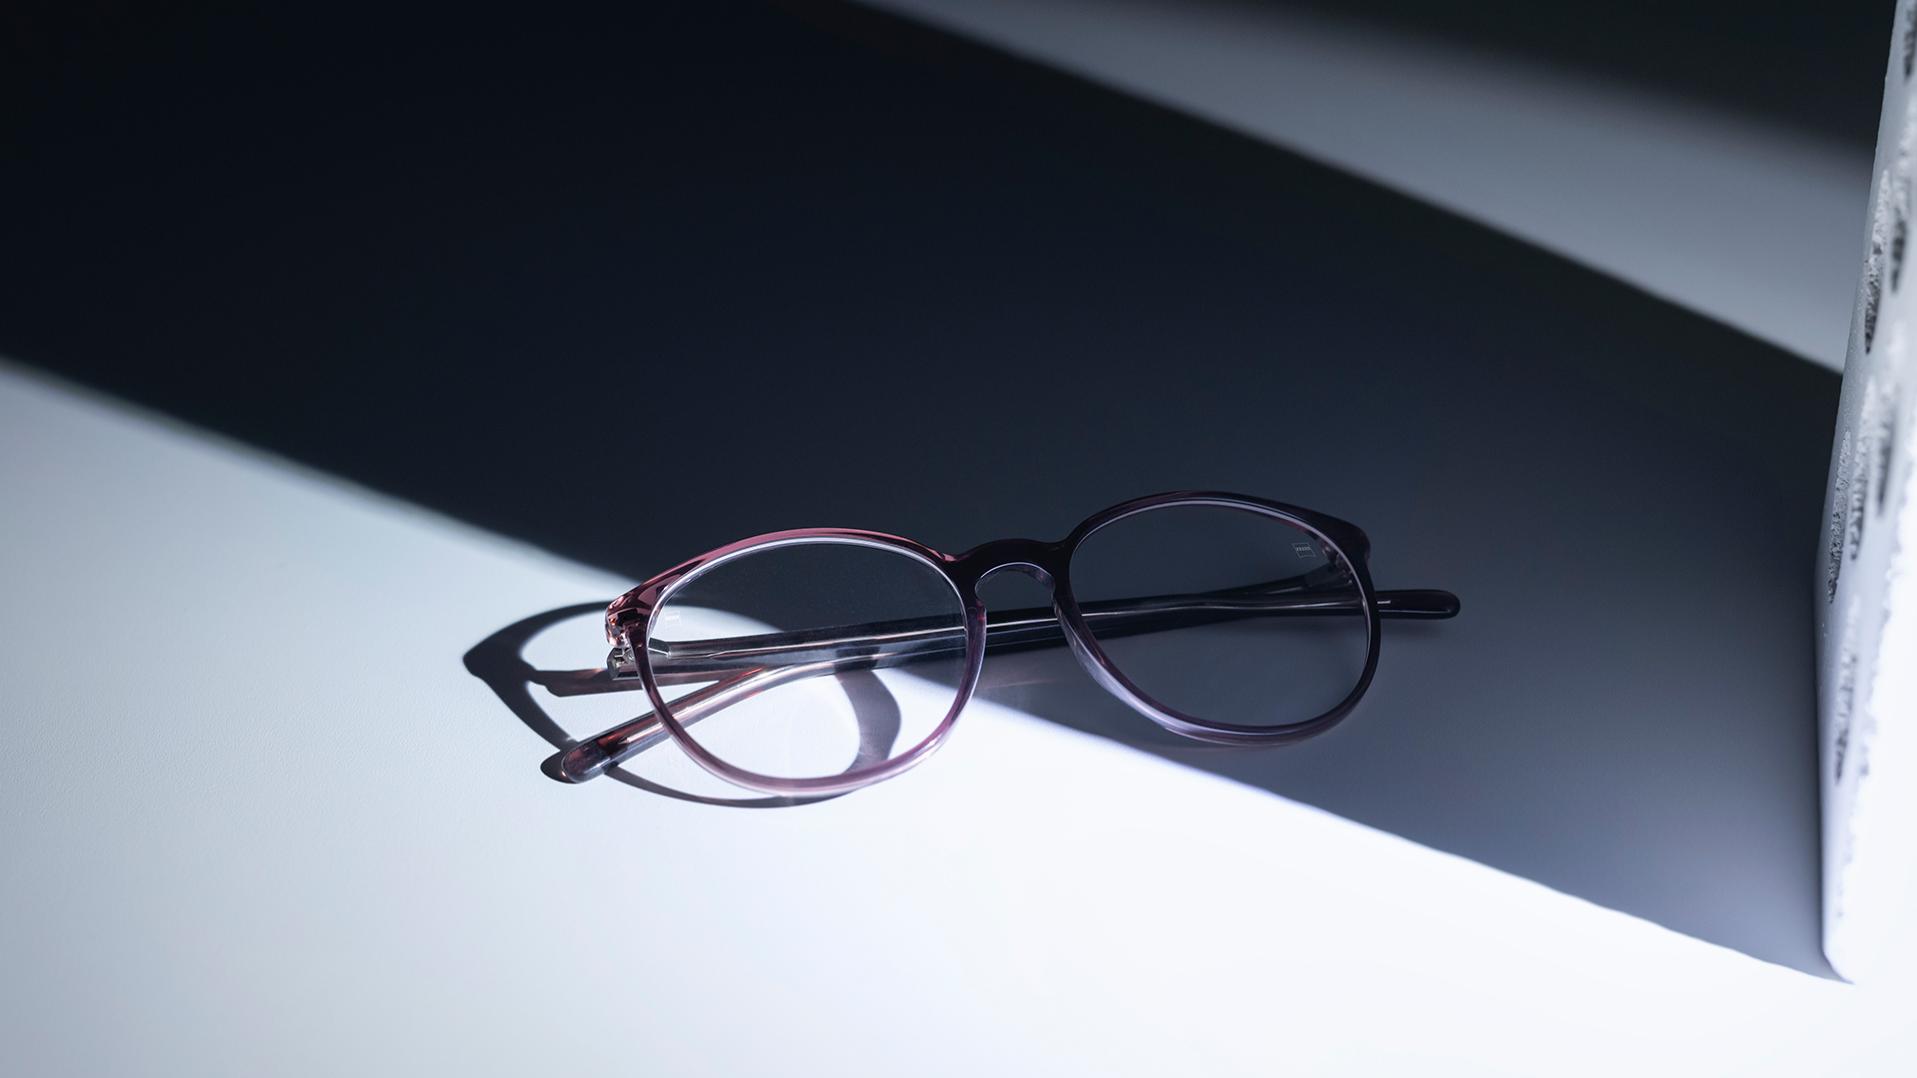 Briller med ZEISS brilleglas og DuraVision®-coating, halvt i skyggen, halvt i solen.